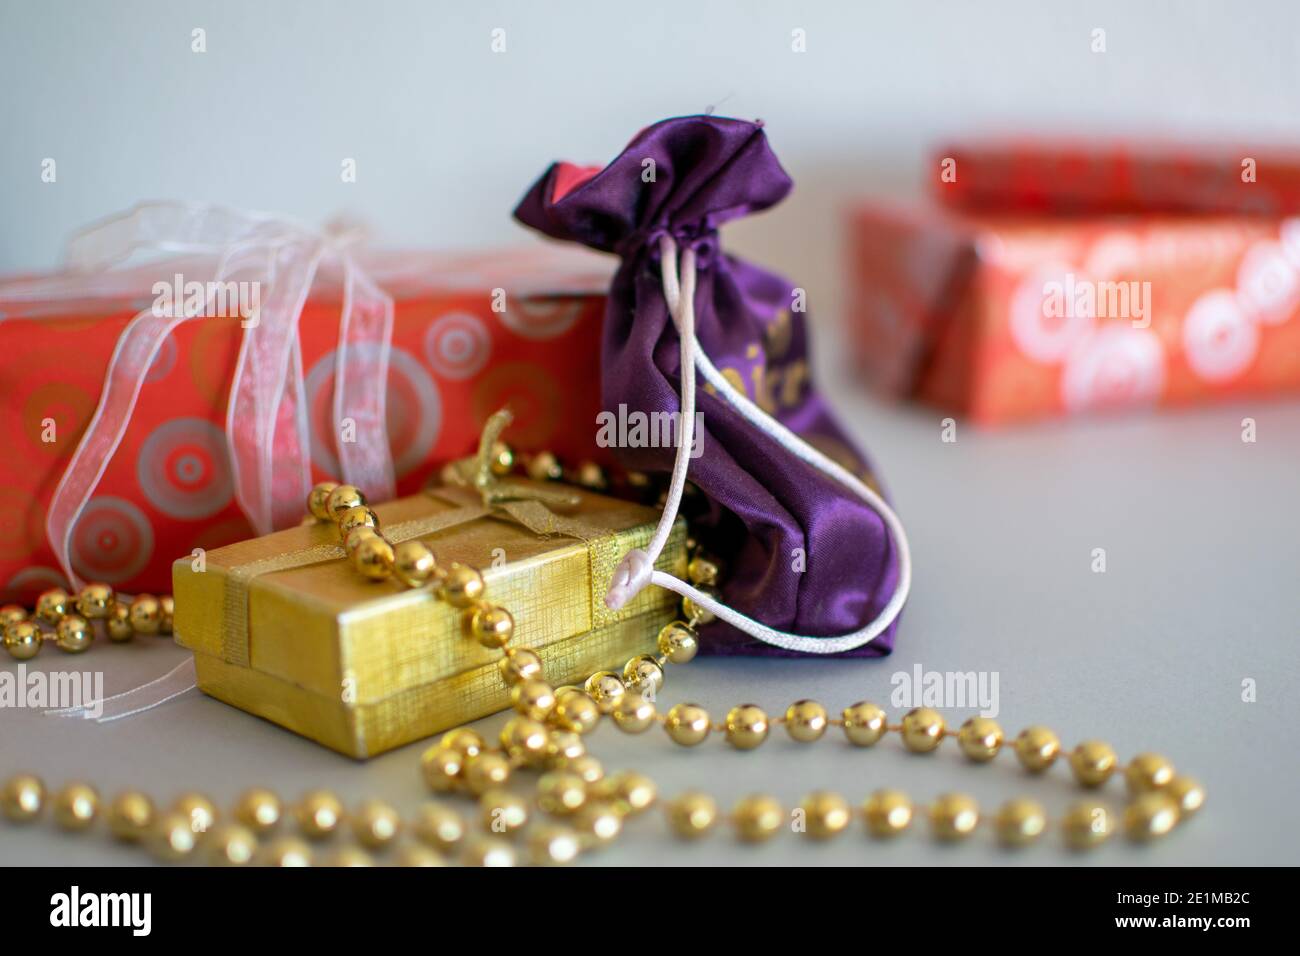 Une sélection de cadeaux de Noël emballés prêts à être ouverts Banque D'Images